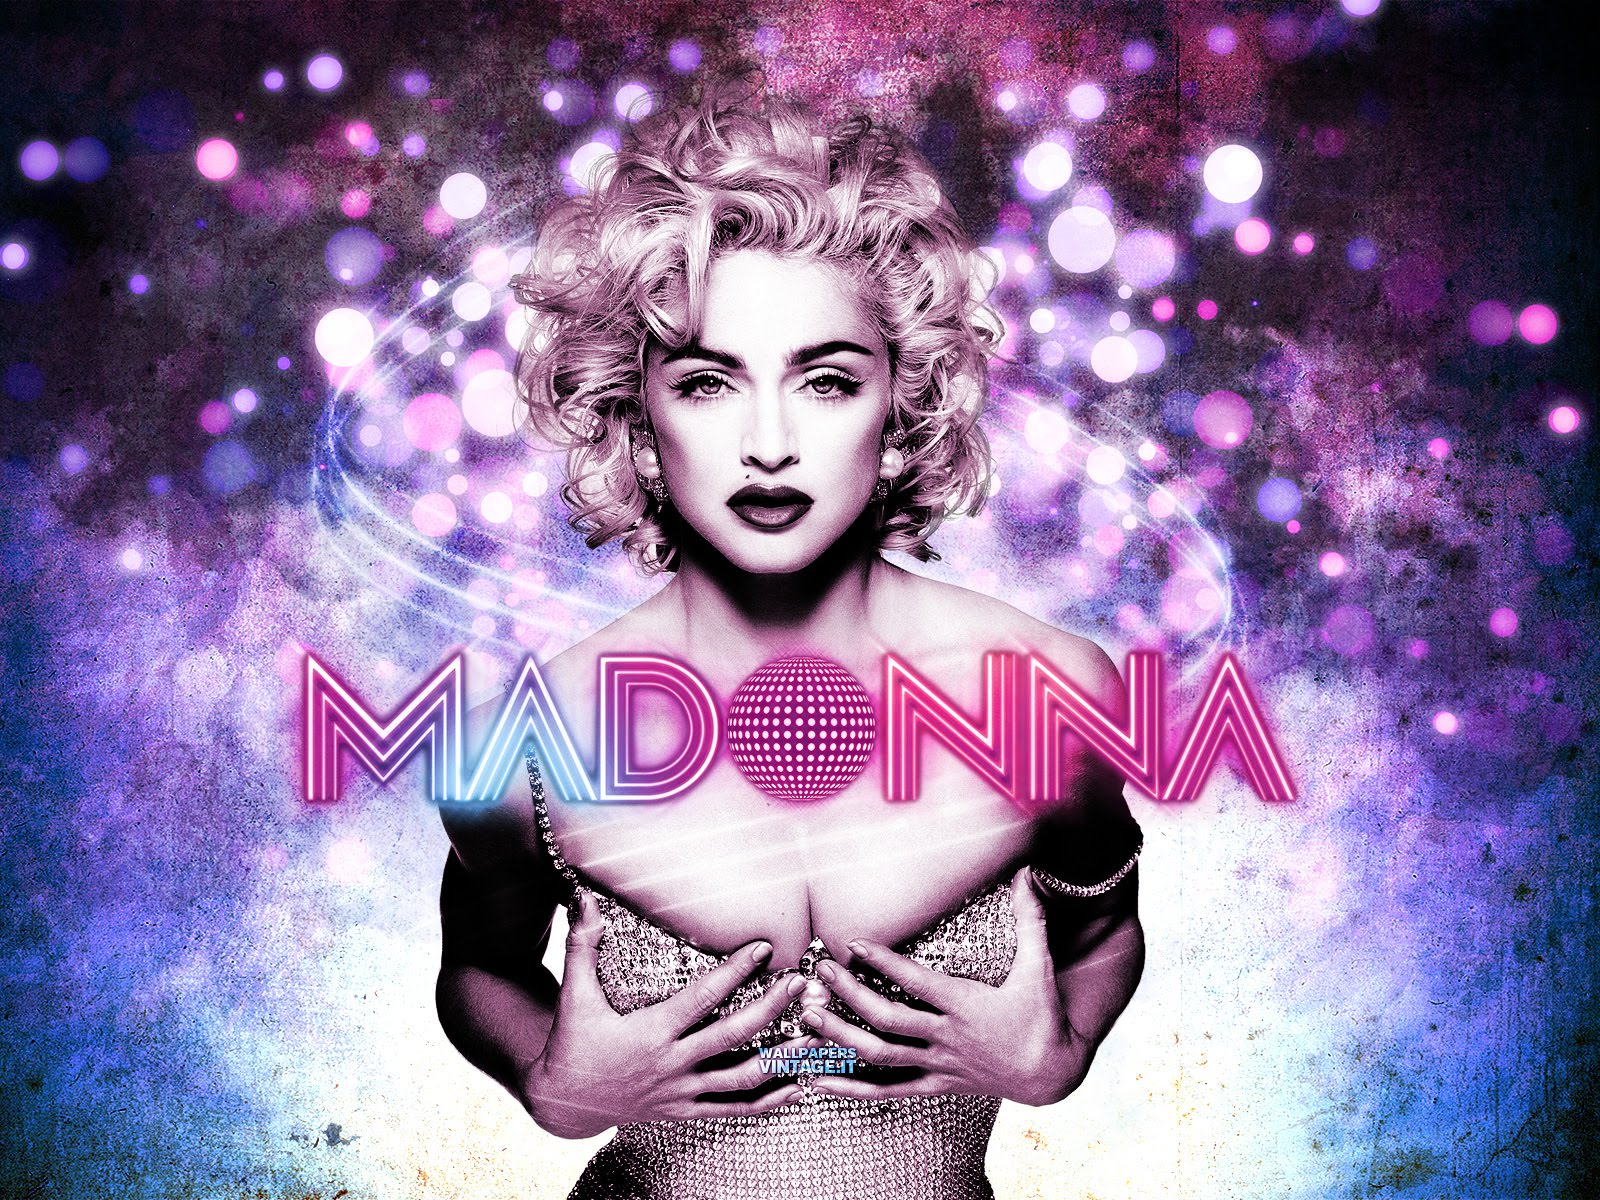 http://3.bp.blogspot.com/-F4DmF7k19AU/T7tT6odX9TI/AAAAAAAAAbM/iT2SLBtIQtE/s1600/Madonna_wallpaper_1600x1200.jpg